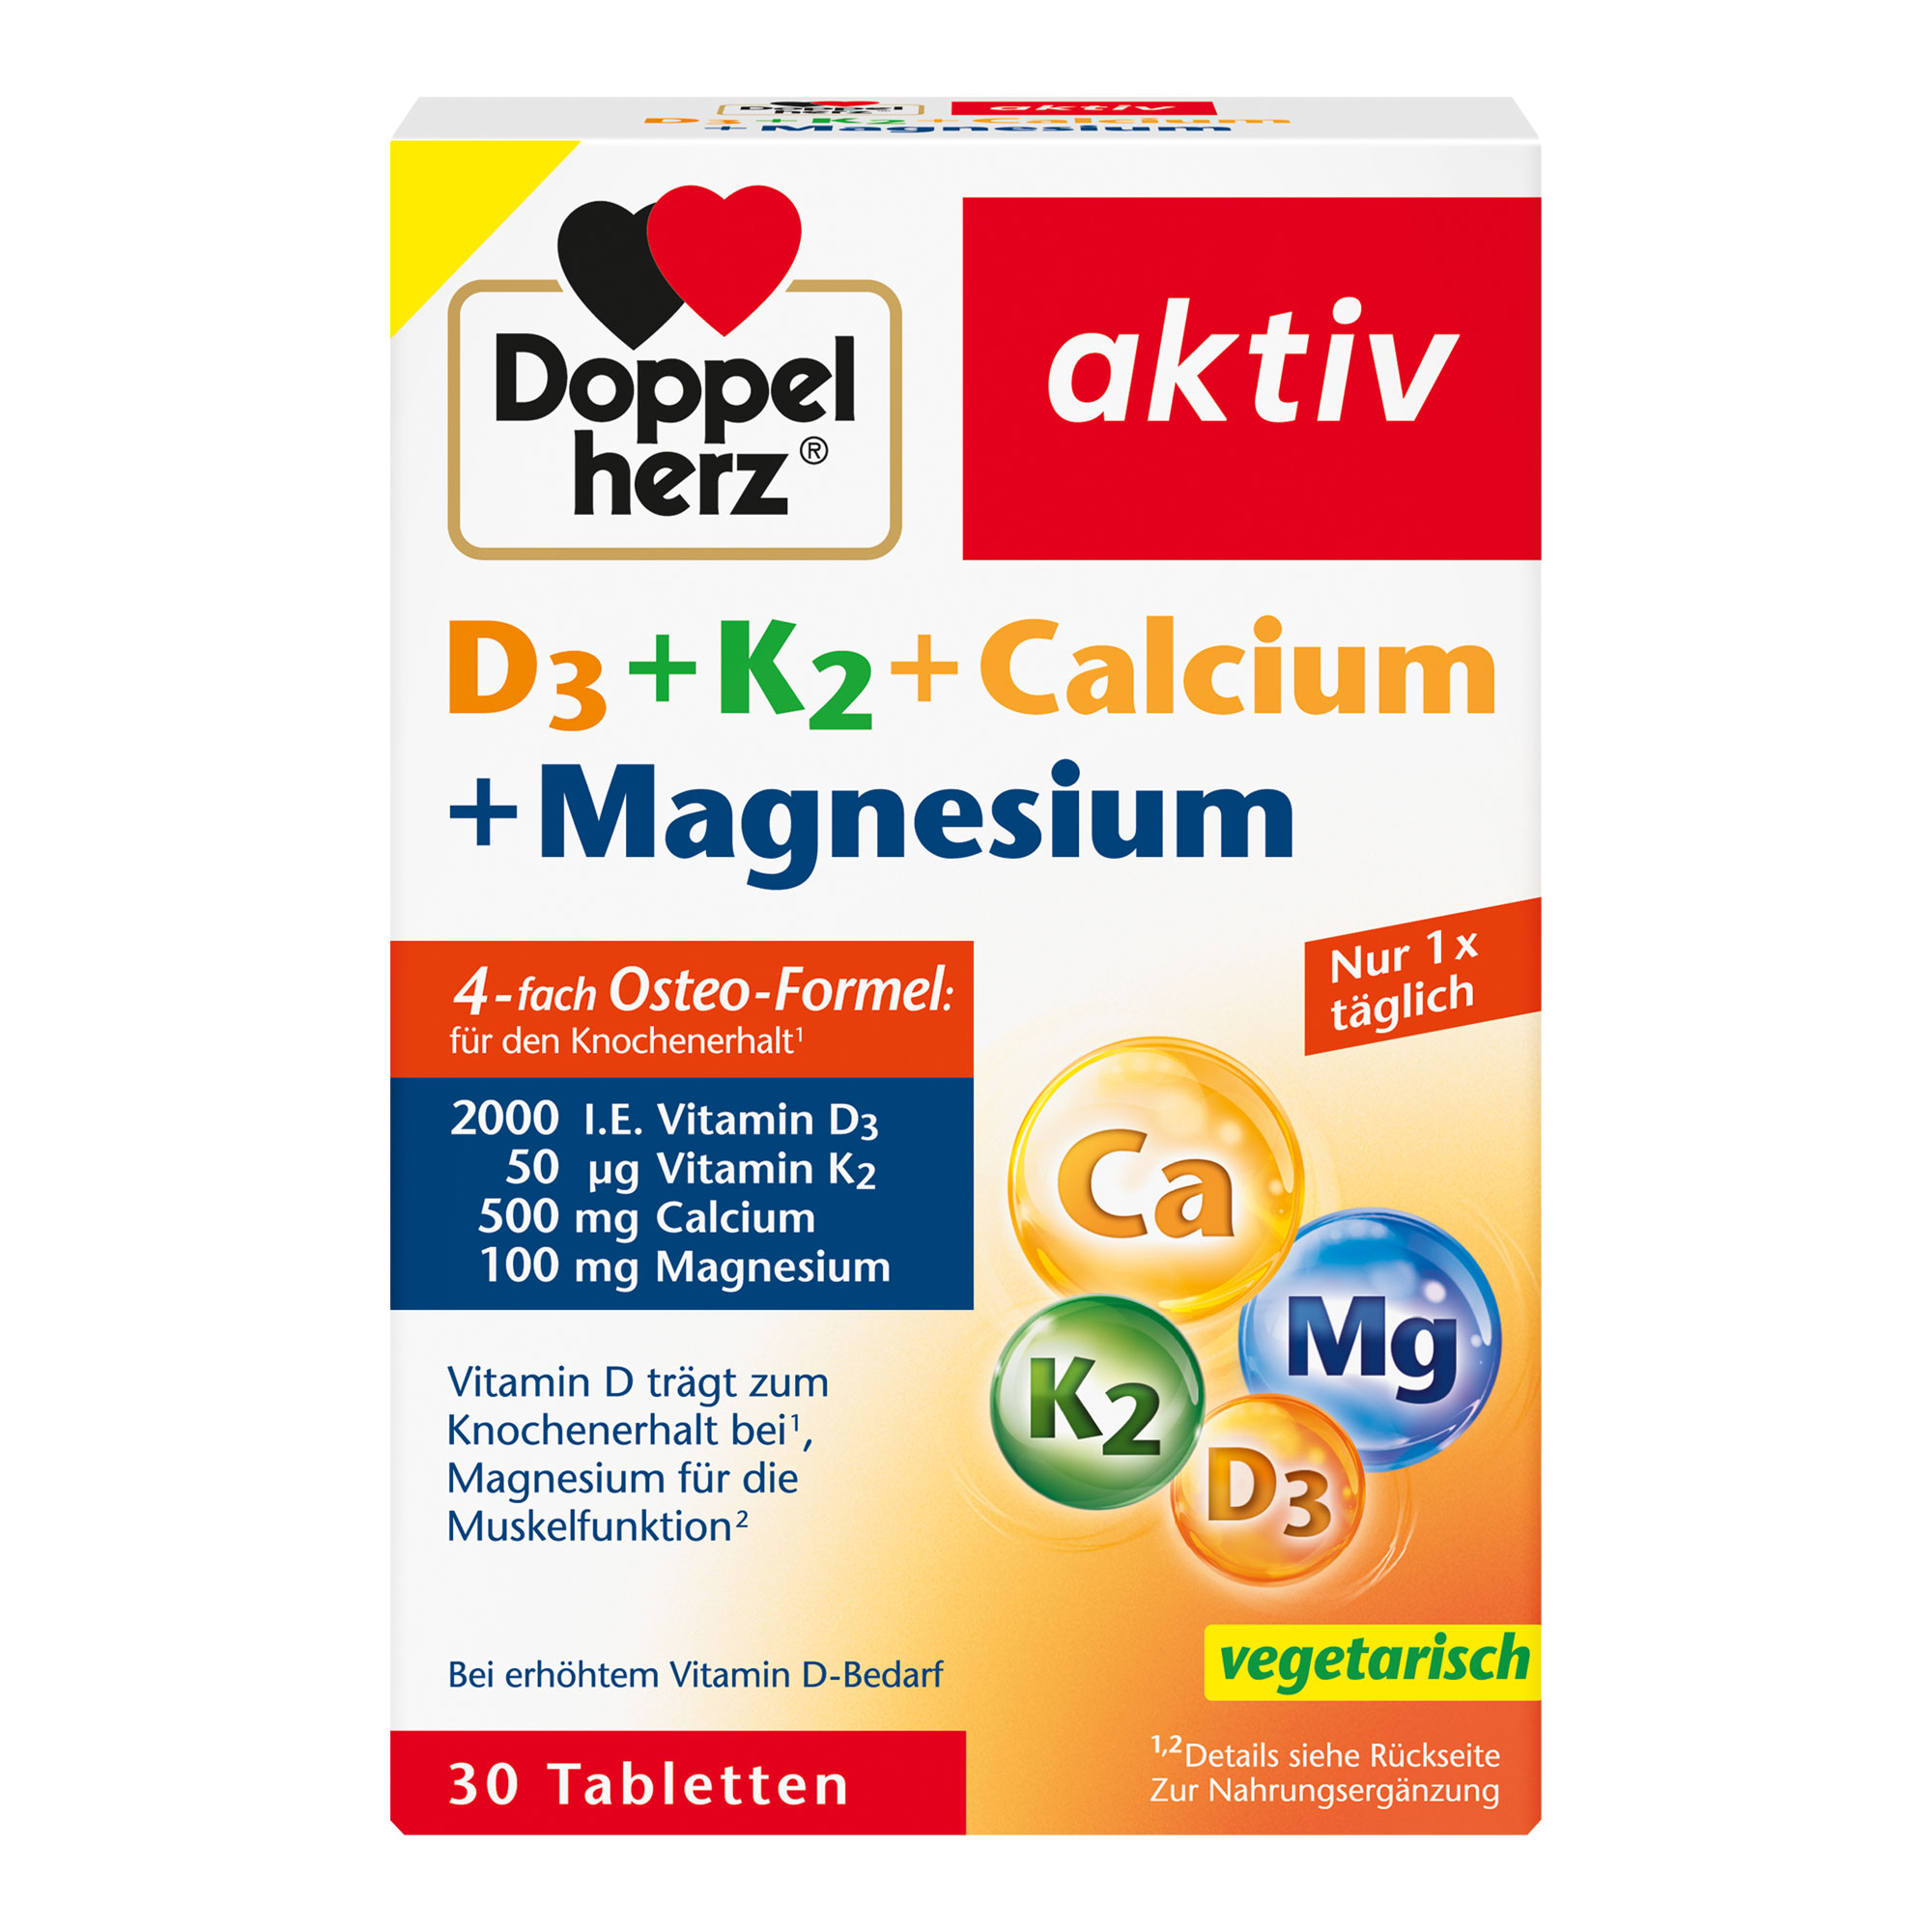 Nahrungsergänzungsmittel mit Vitamin D, Vitamin K, Calcium und Magnesium.